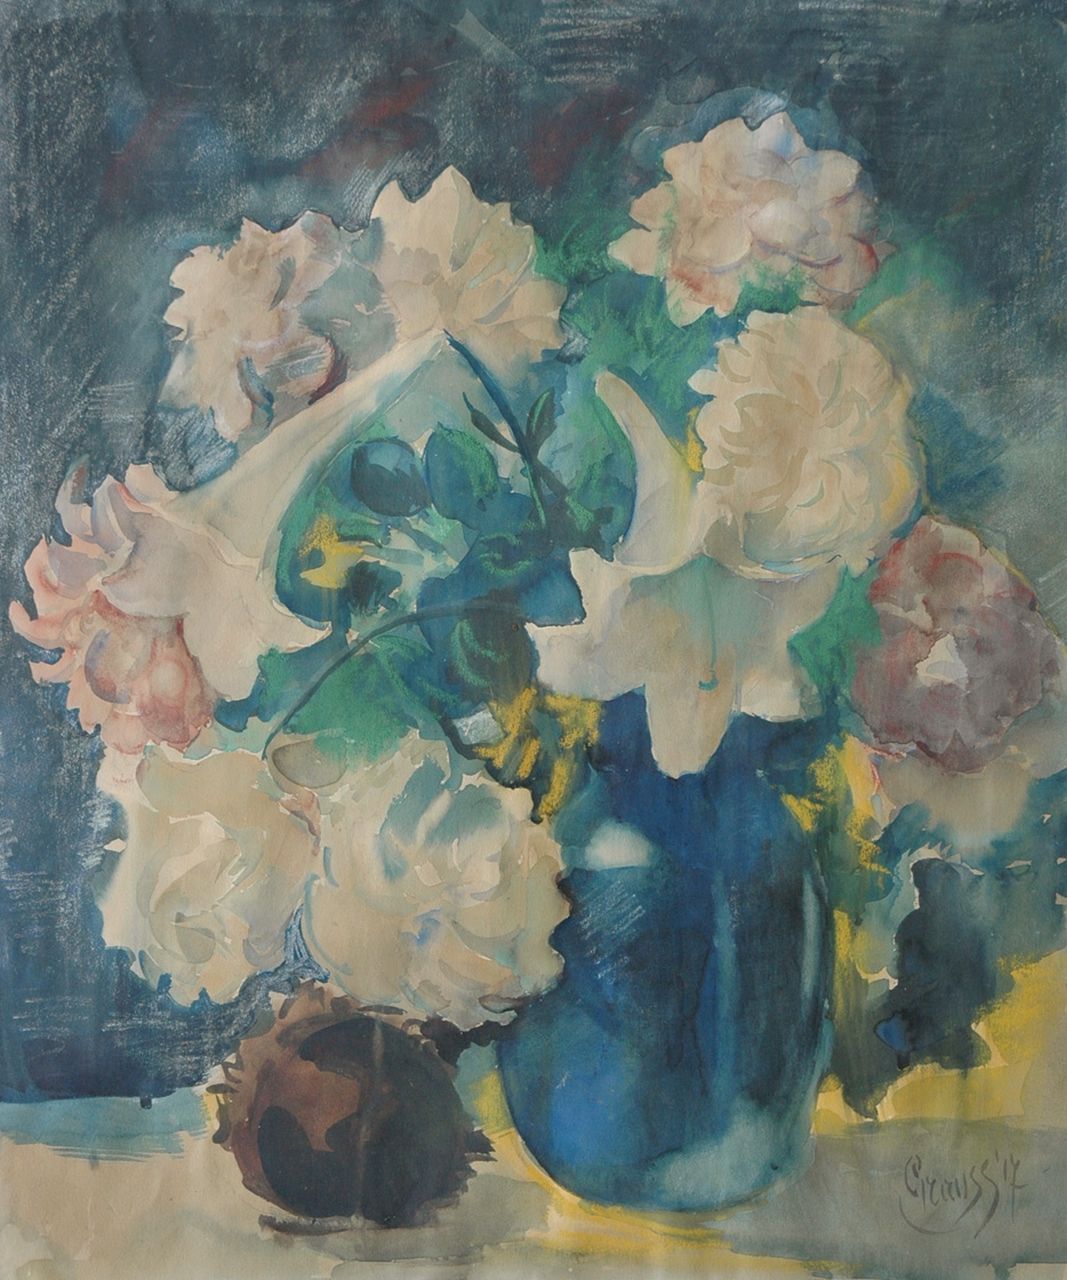 Geert Grauss | Flowers in a blue vase, Pastell und Aquarell auf Papier, 67,8 x 56,4 cm, signed l.r. und dated '17